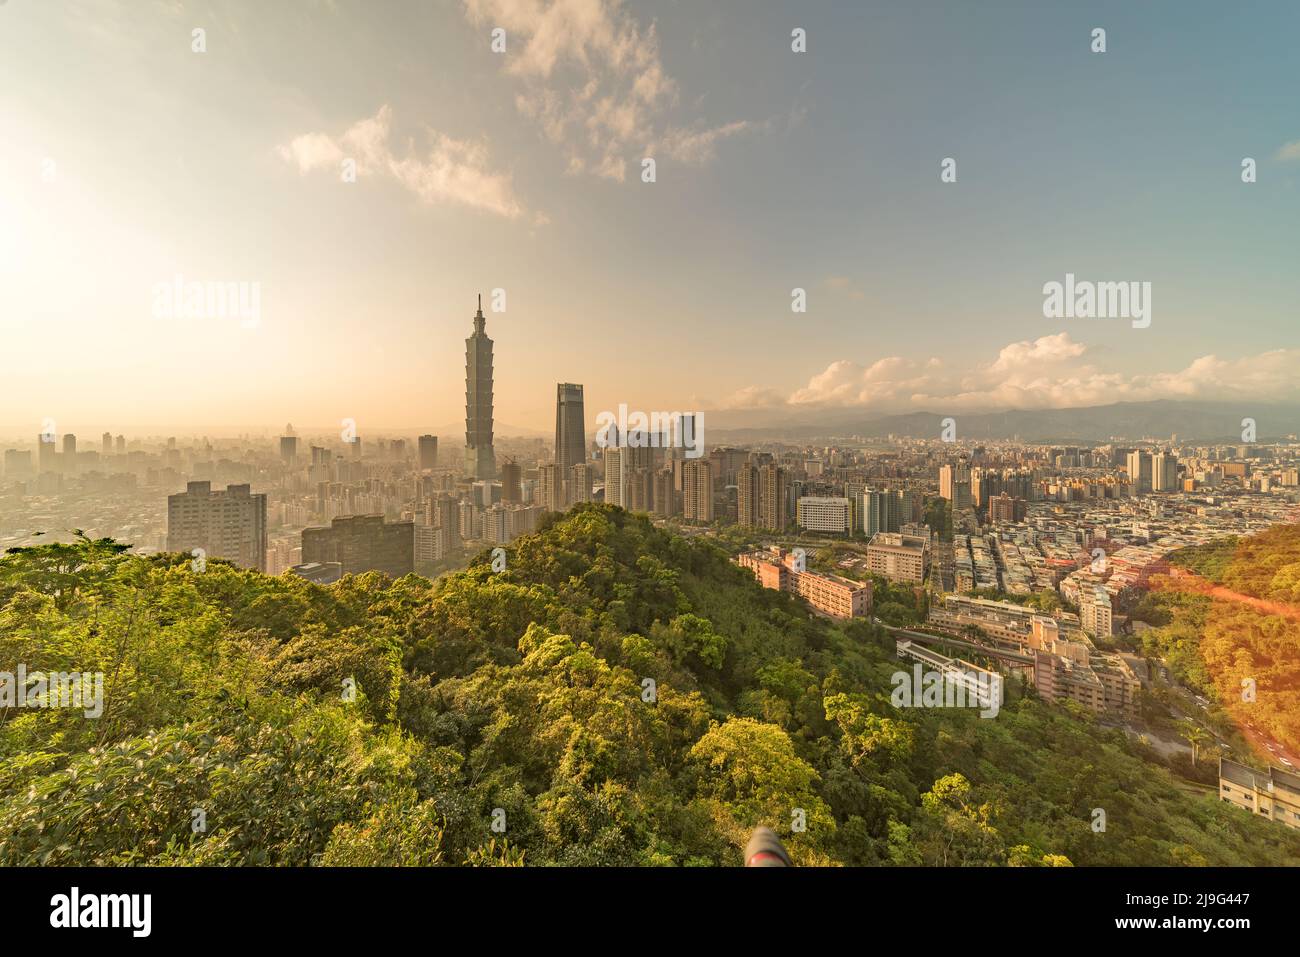 Taipei, Taiwan city skyline during the sunset. Stock Photo